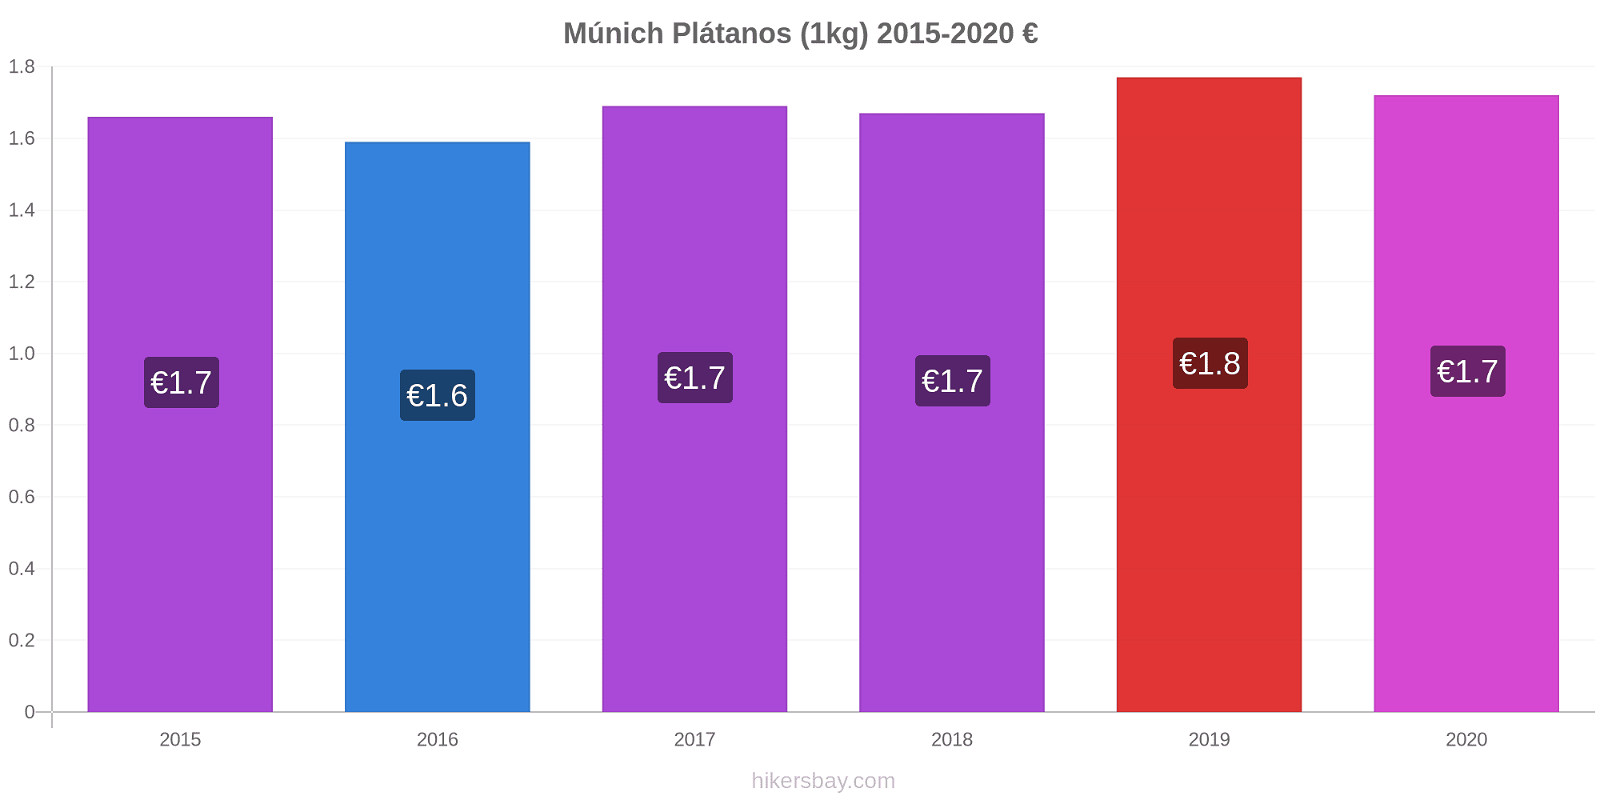 Múnich cambios de precios Plátano (1kg) hikersbay.com